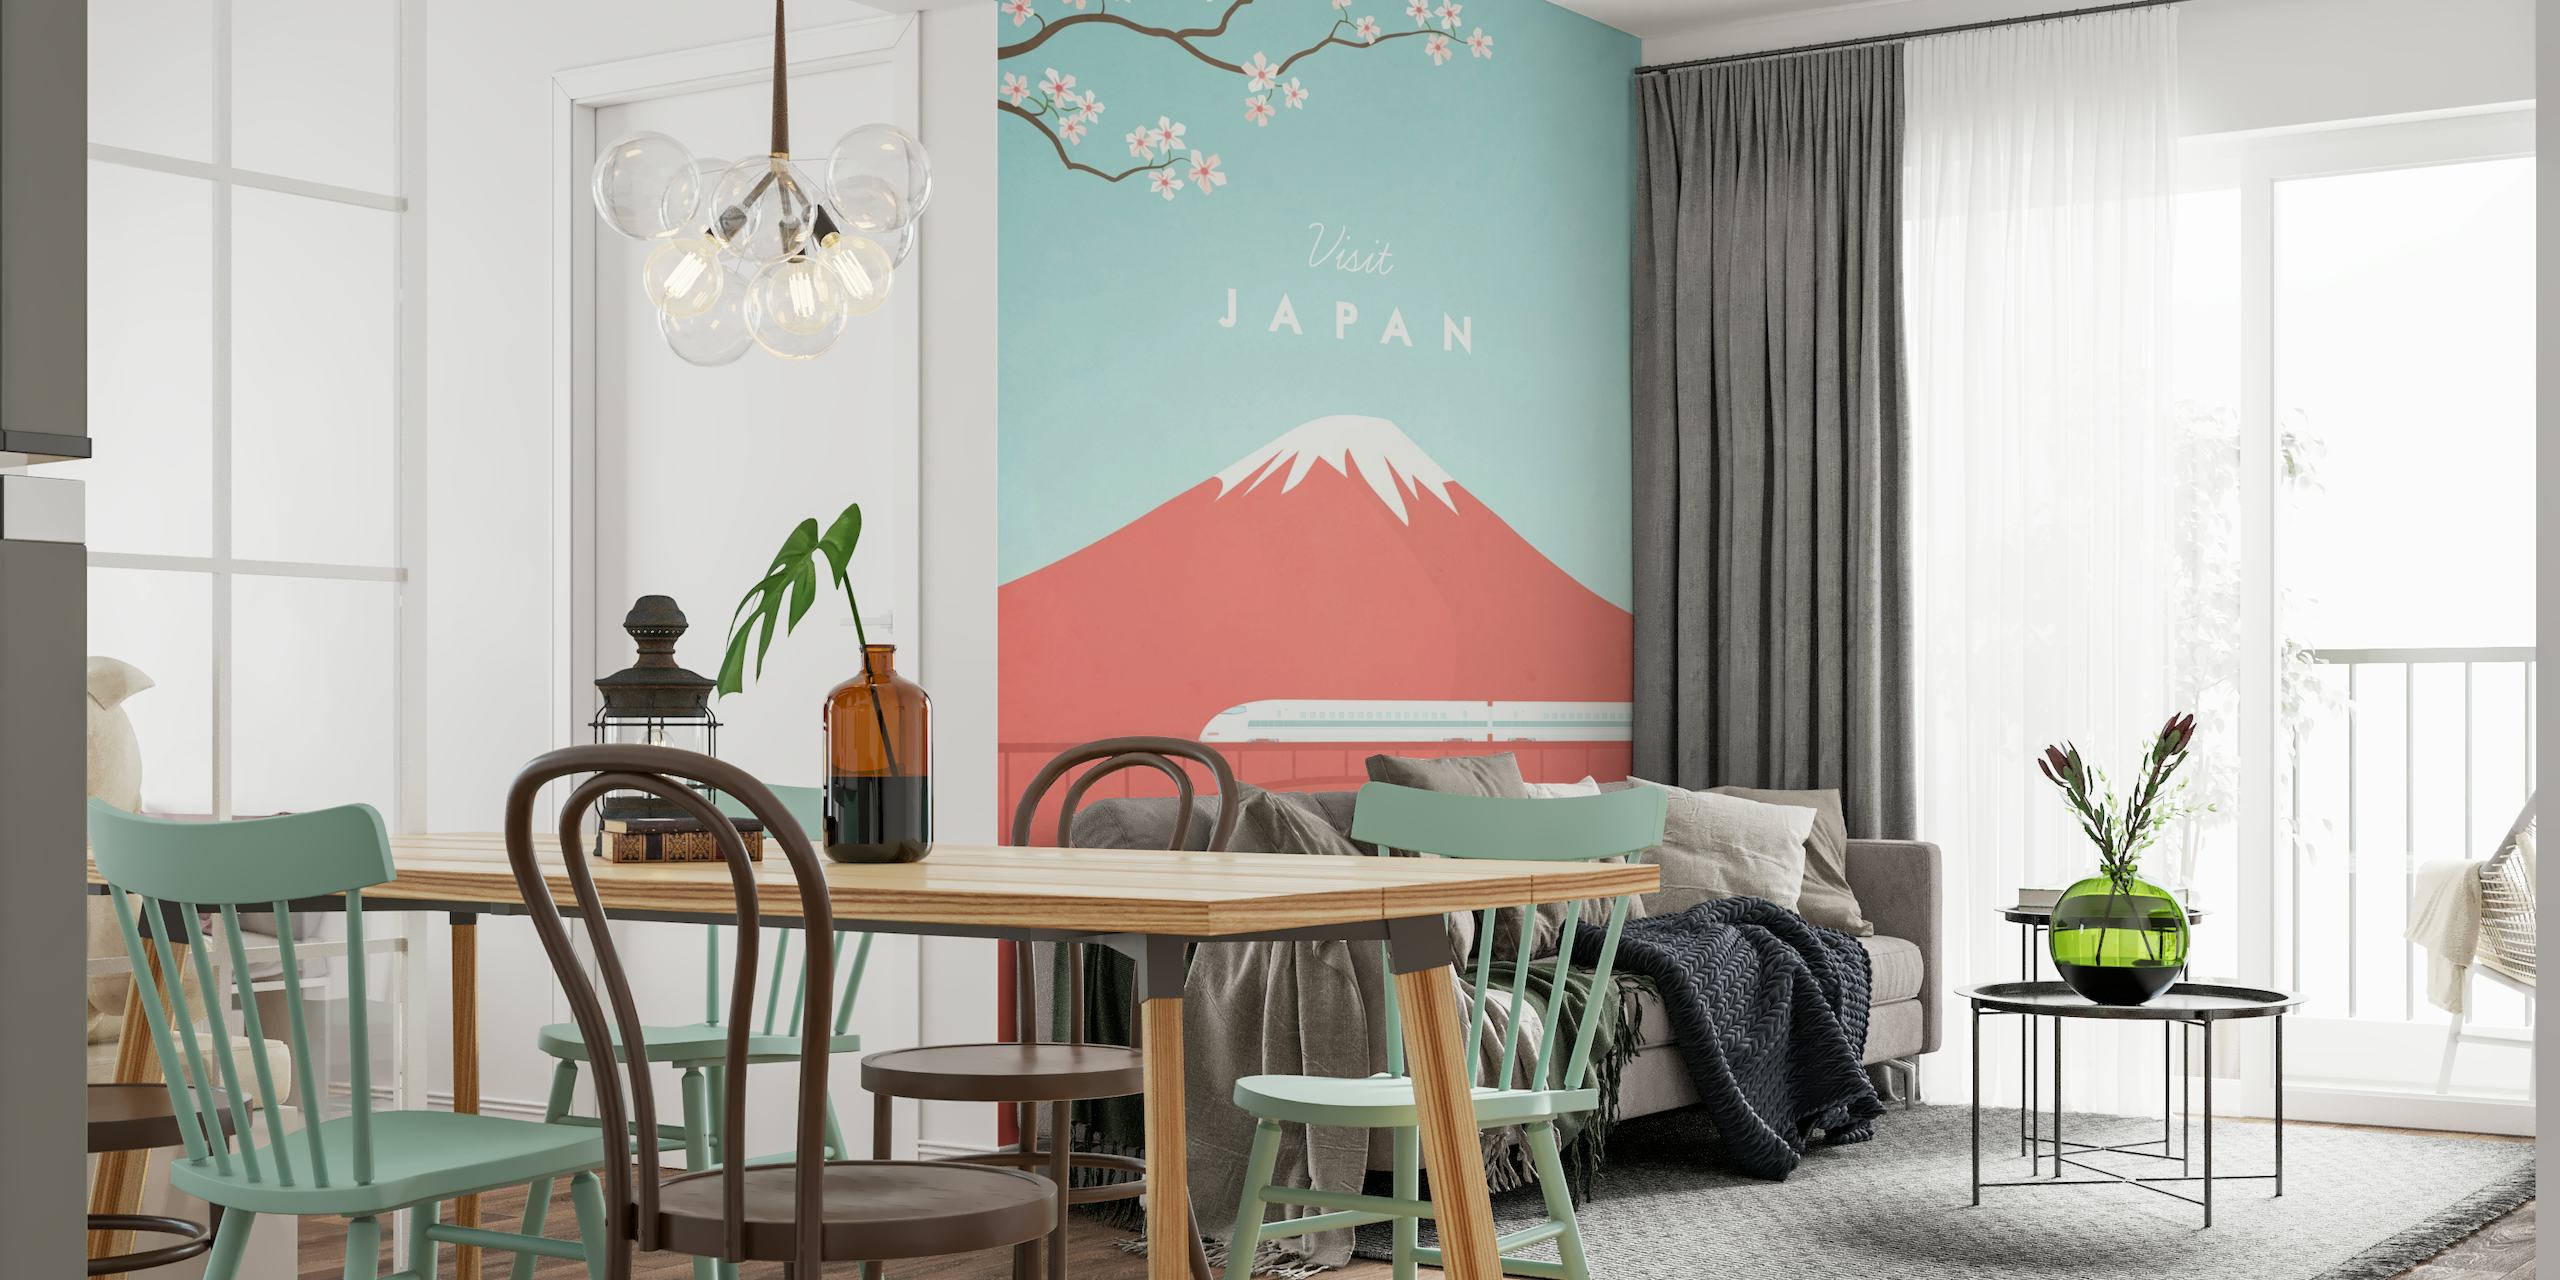 Japan Travel Poster behang